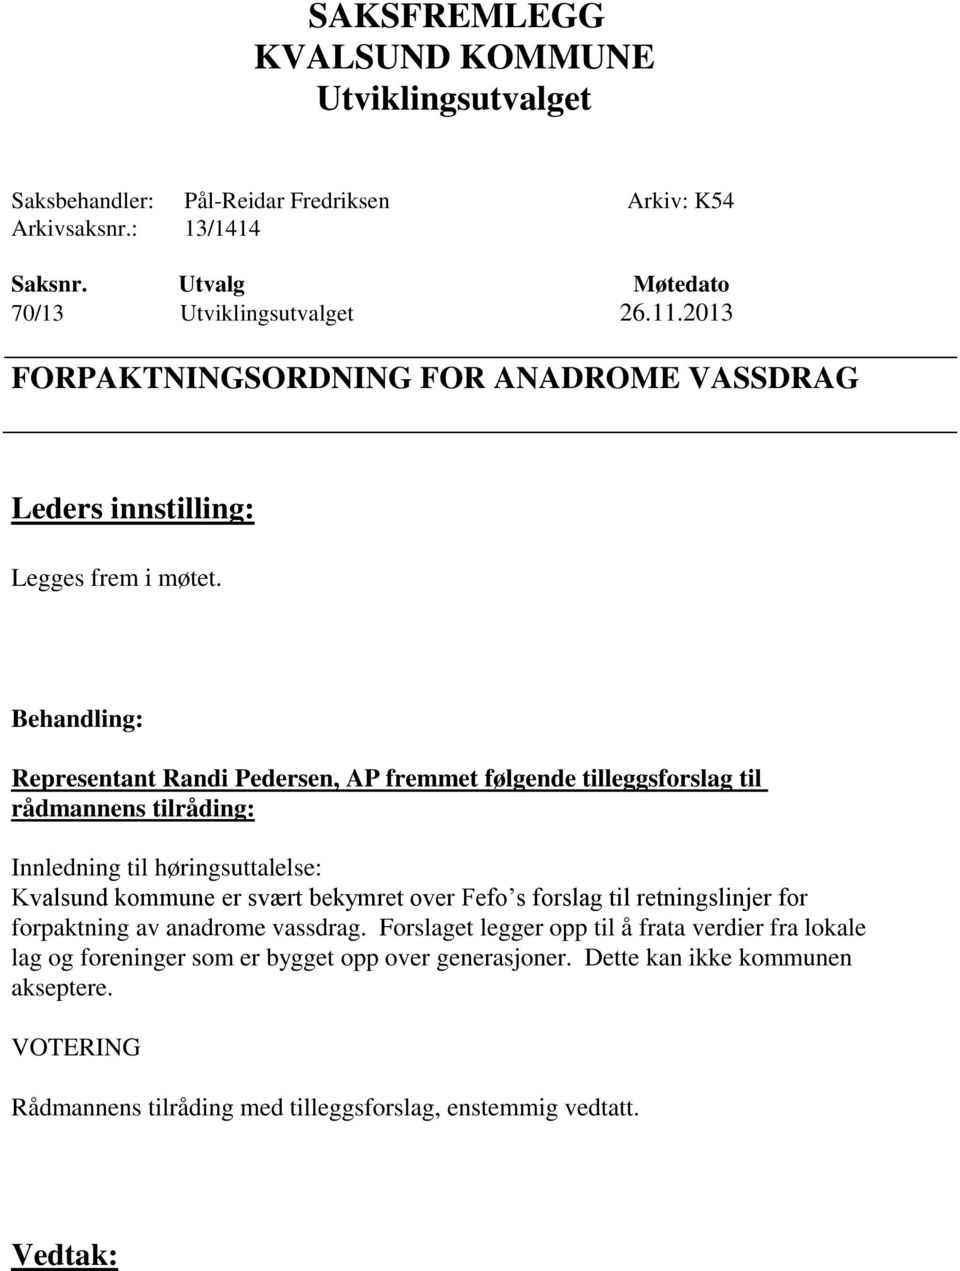 Representant Randi Pedersen, AP fremmet følgende tilleggsforslag til rådmannens tilråding: Innledning til høringsuttalelse: Kvalsund kommune er svært